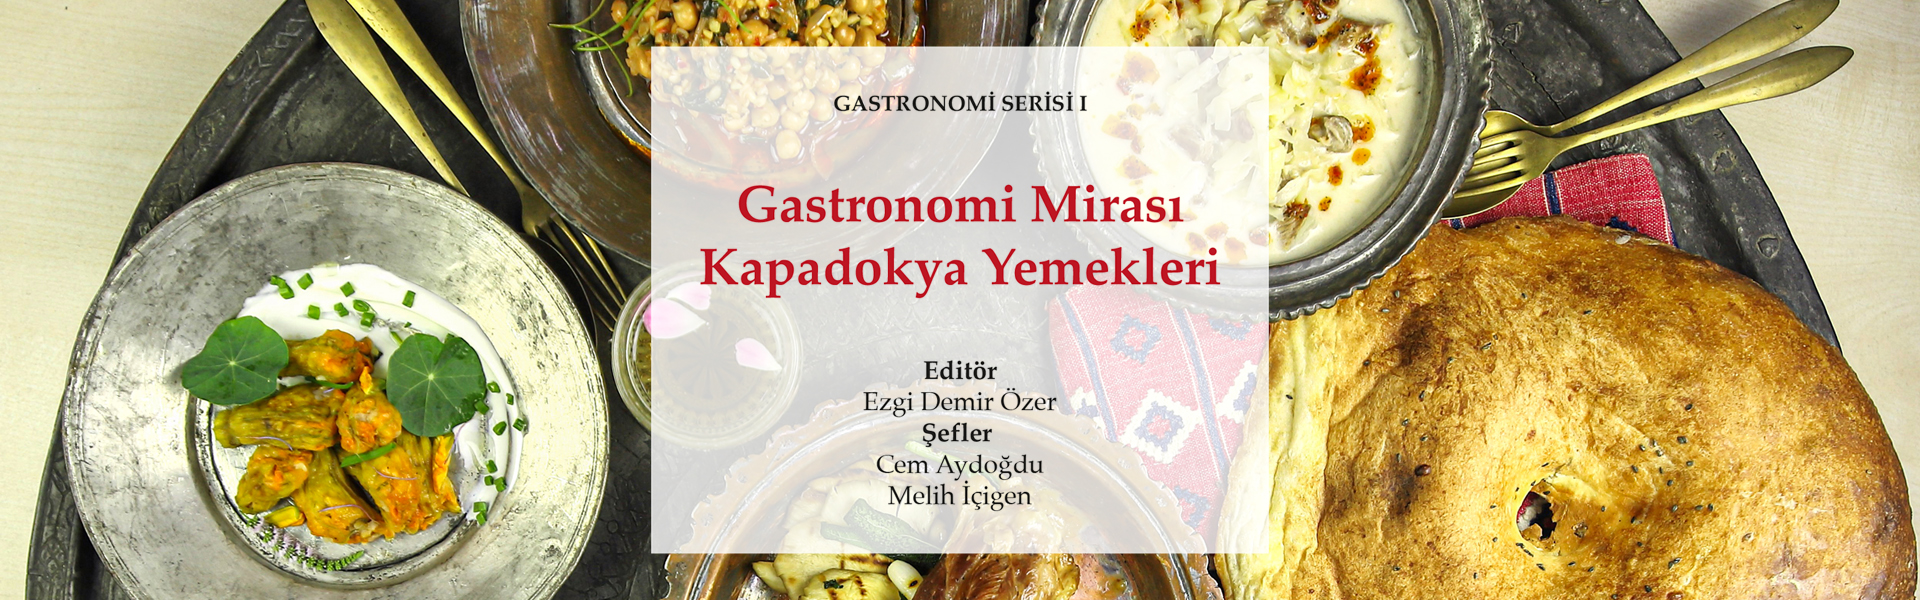 Kapadokya Üniversitesinin hazırladığı "Gastronomi Mirası: Kapadokya Yemekleri" Kitabı Çıktı.